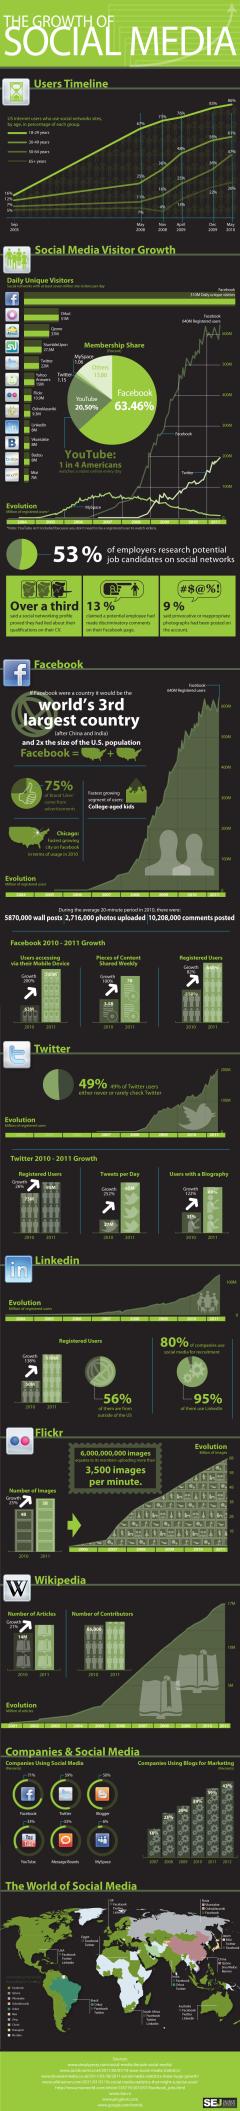 El crecimiento de las redes sociales – infografía